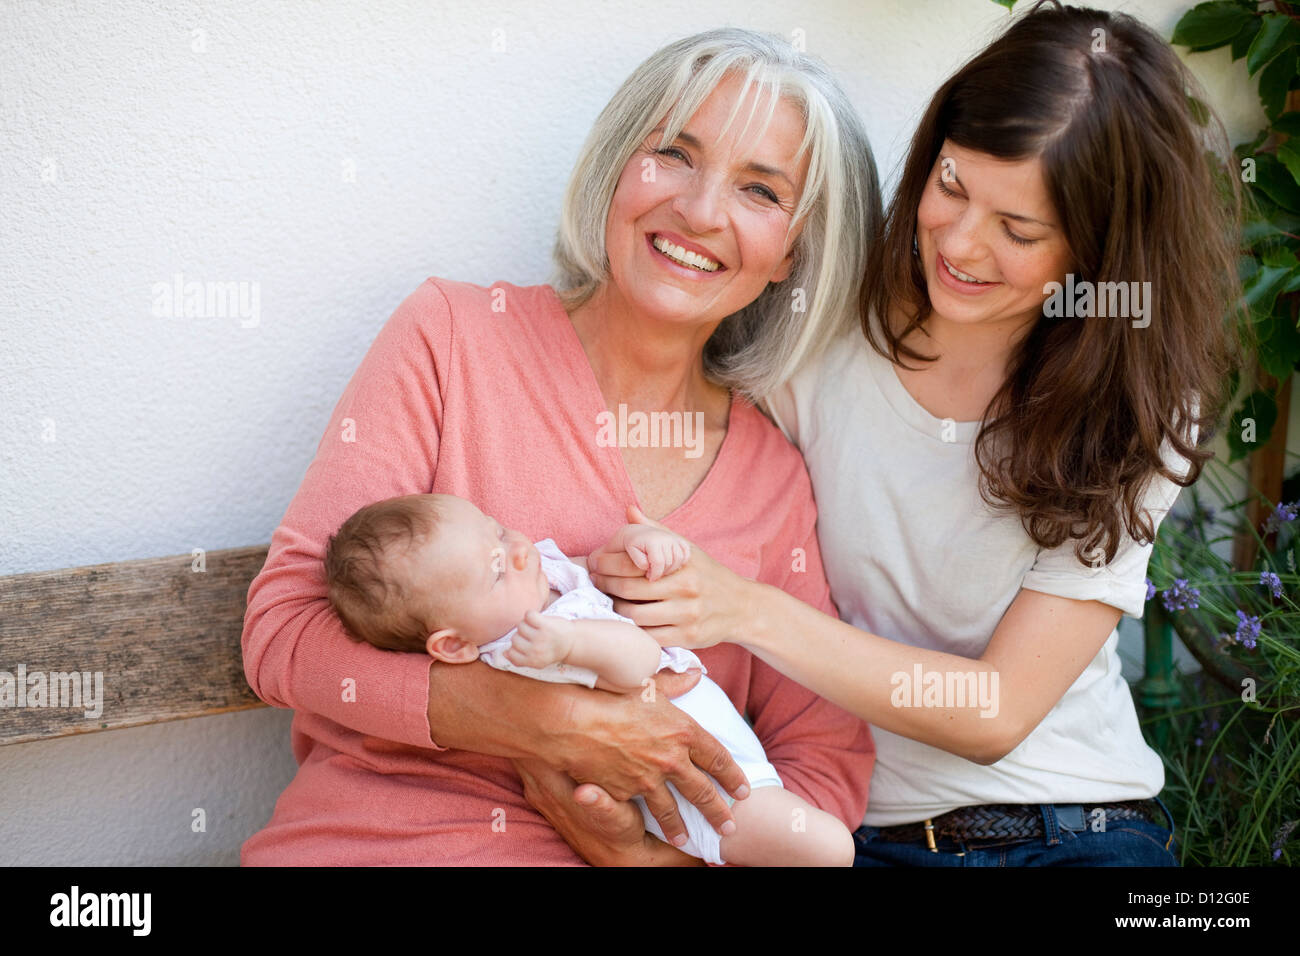 Germany, Bavaria, trois générations siégeant ensemble, smiling Banque D'Images